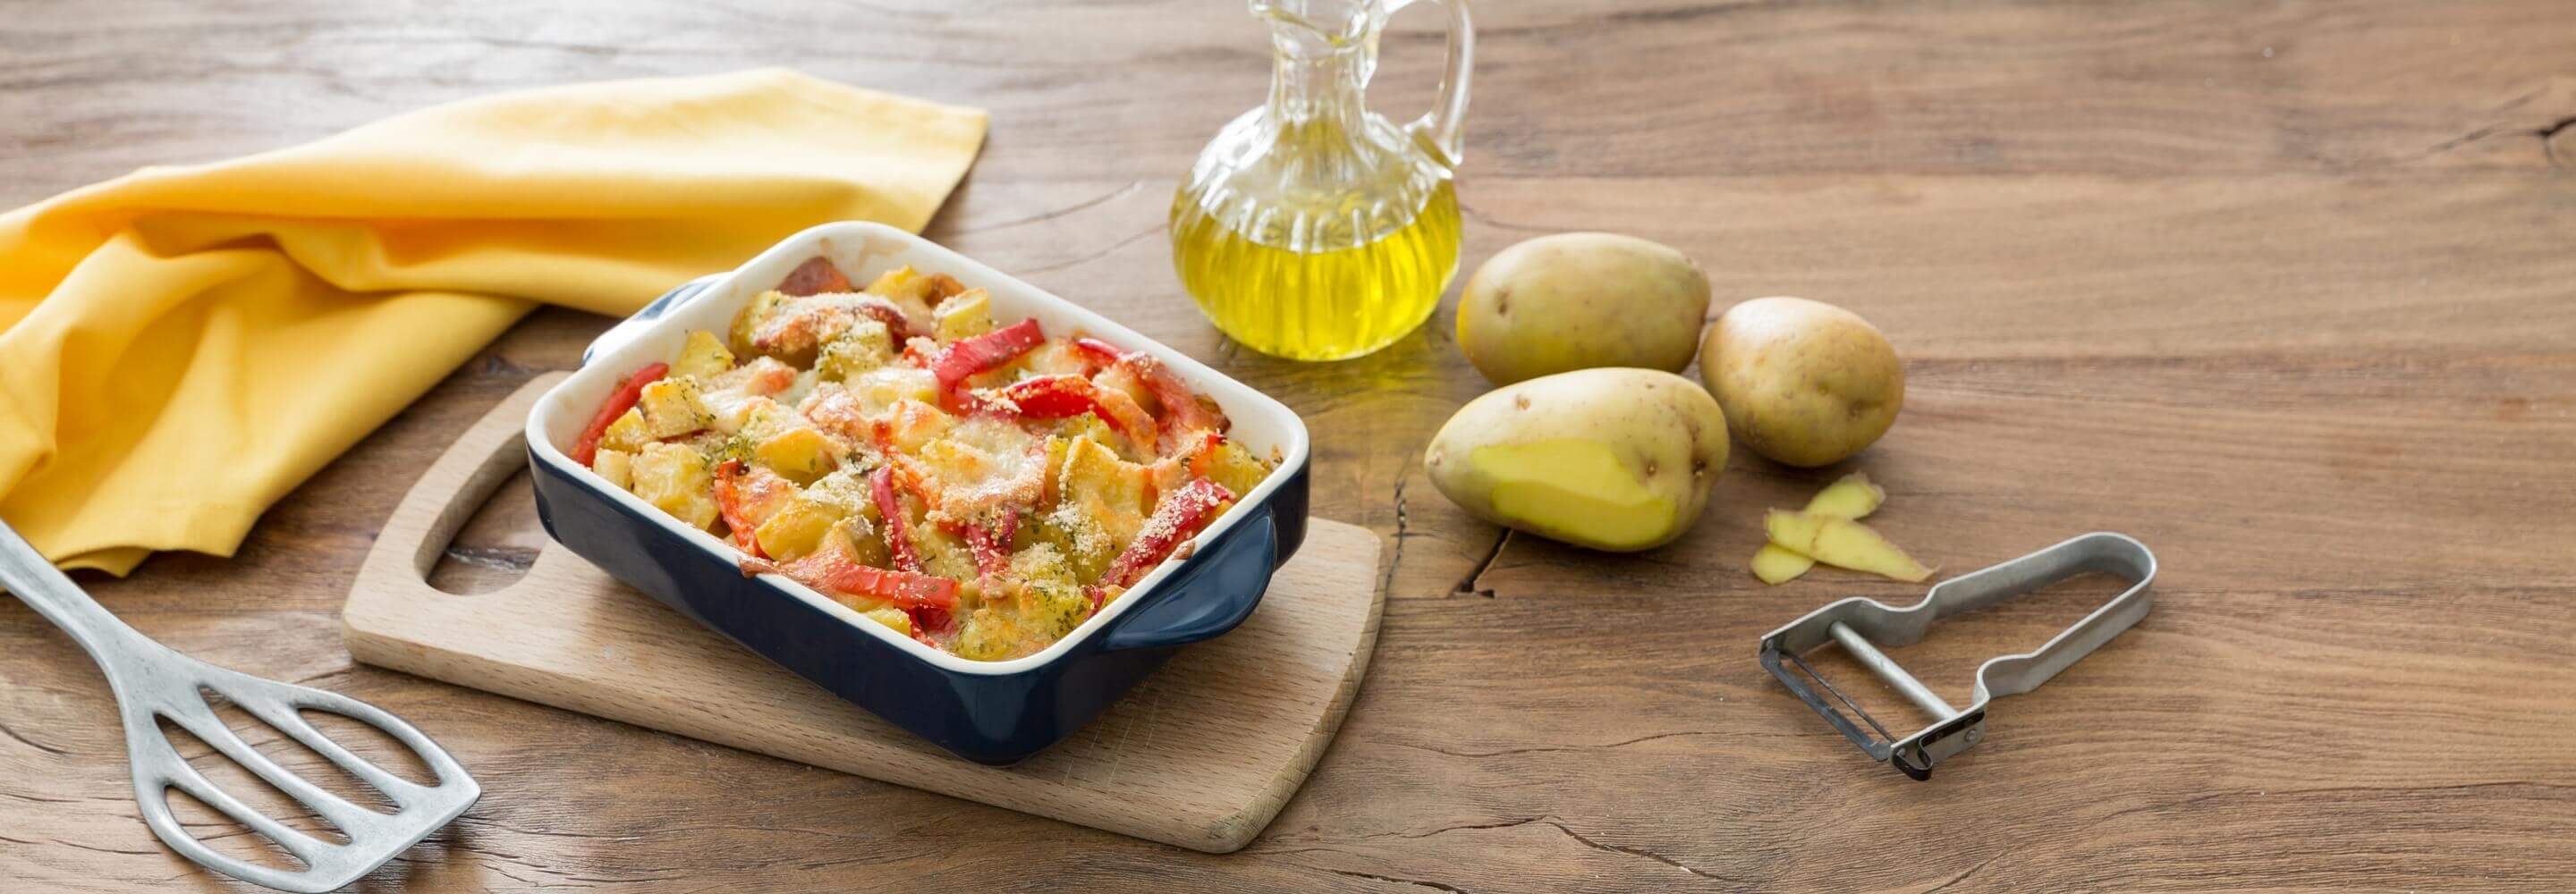 Peperoni e patate al forno con mozzarella